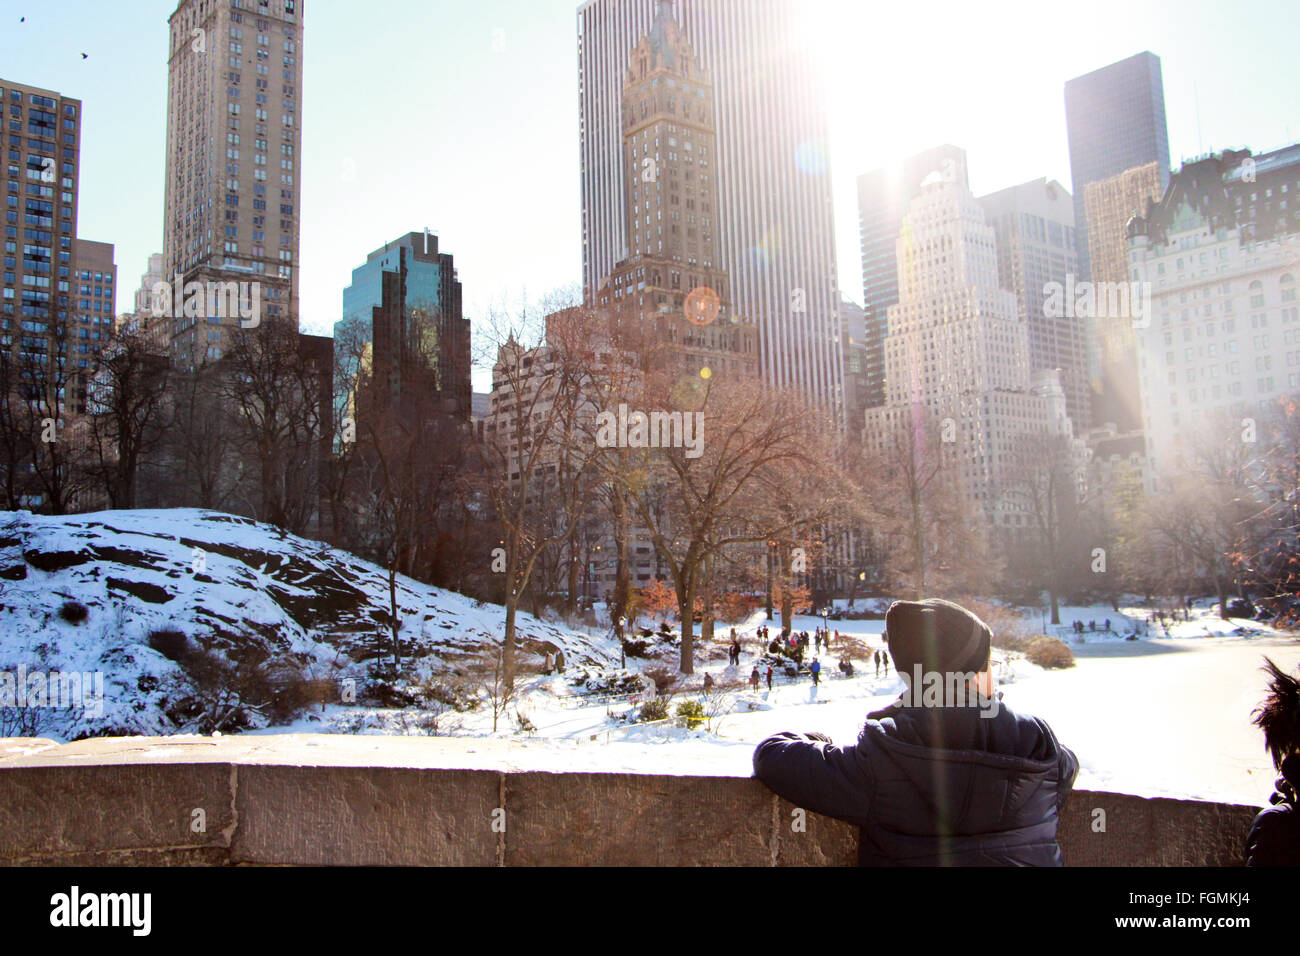 Kind, Blick auf die Wolkenkratzer und Park in New York City im Winter Schnee Stockfoto